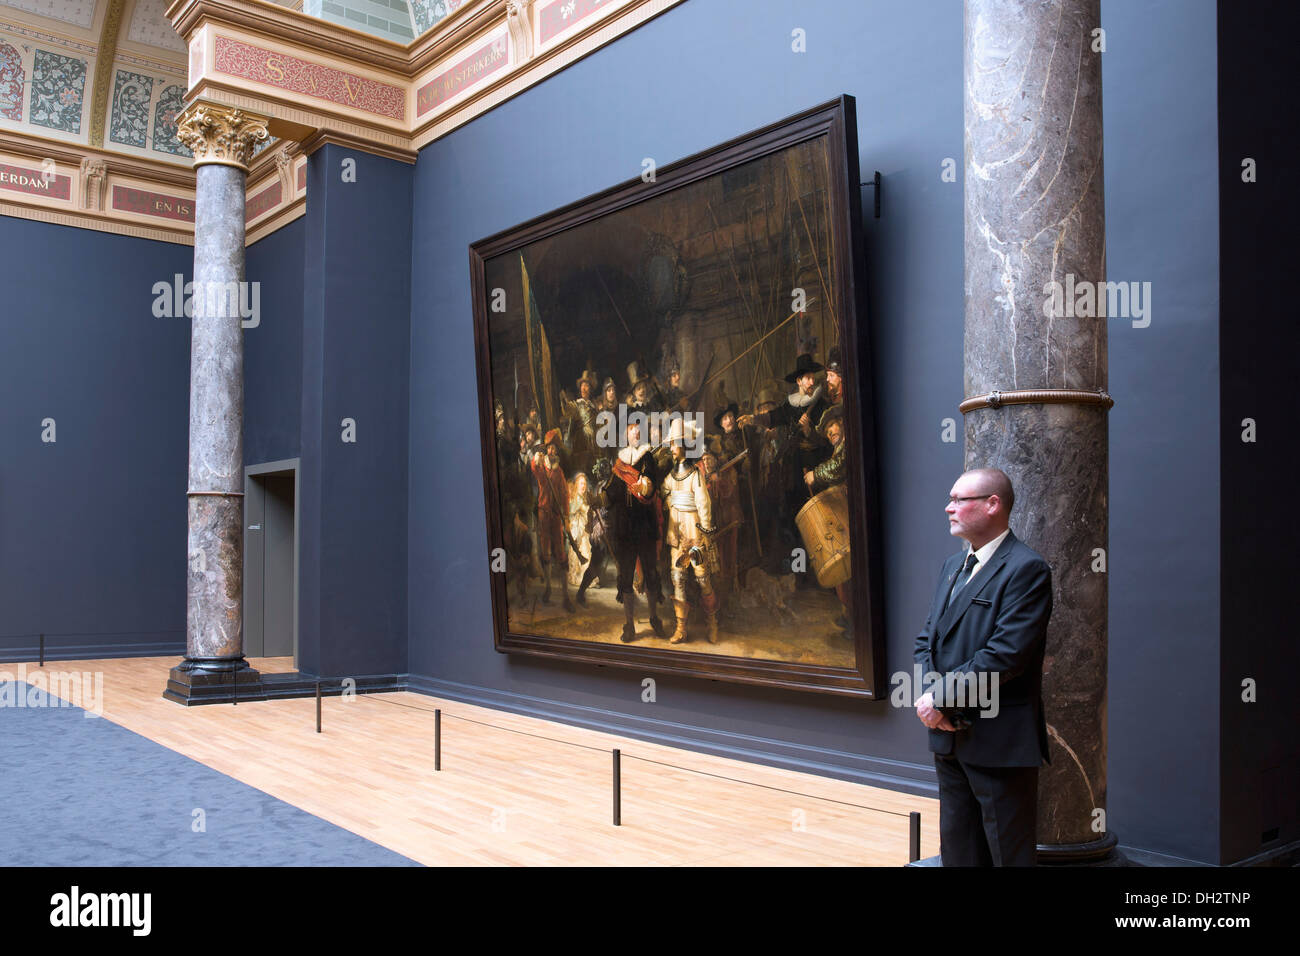 Niederlande, Amsterdam, Rijksmuseum. Hintergrund Gemälde Die Nachtwache (De Nachtwacht) Rembrandt van Rijn. Guard. 17. Jahrhundert. Stockfoto